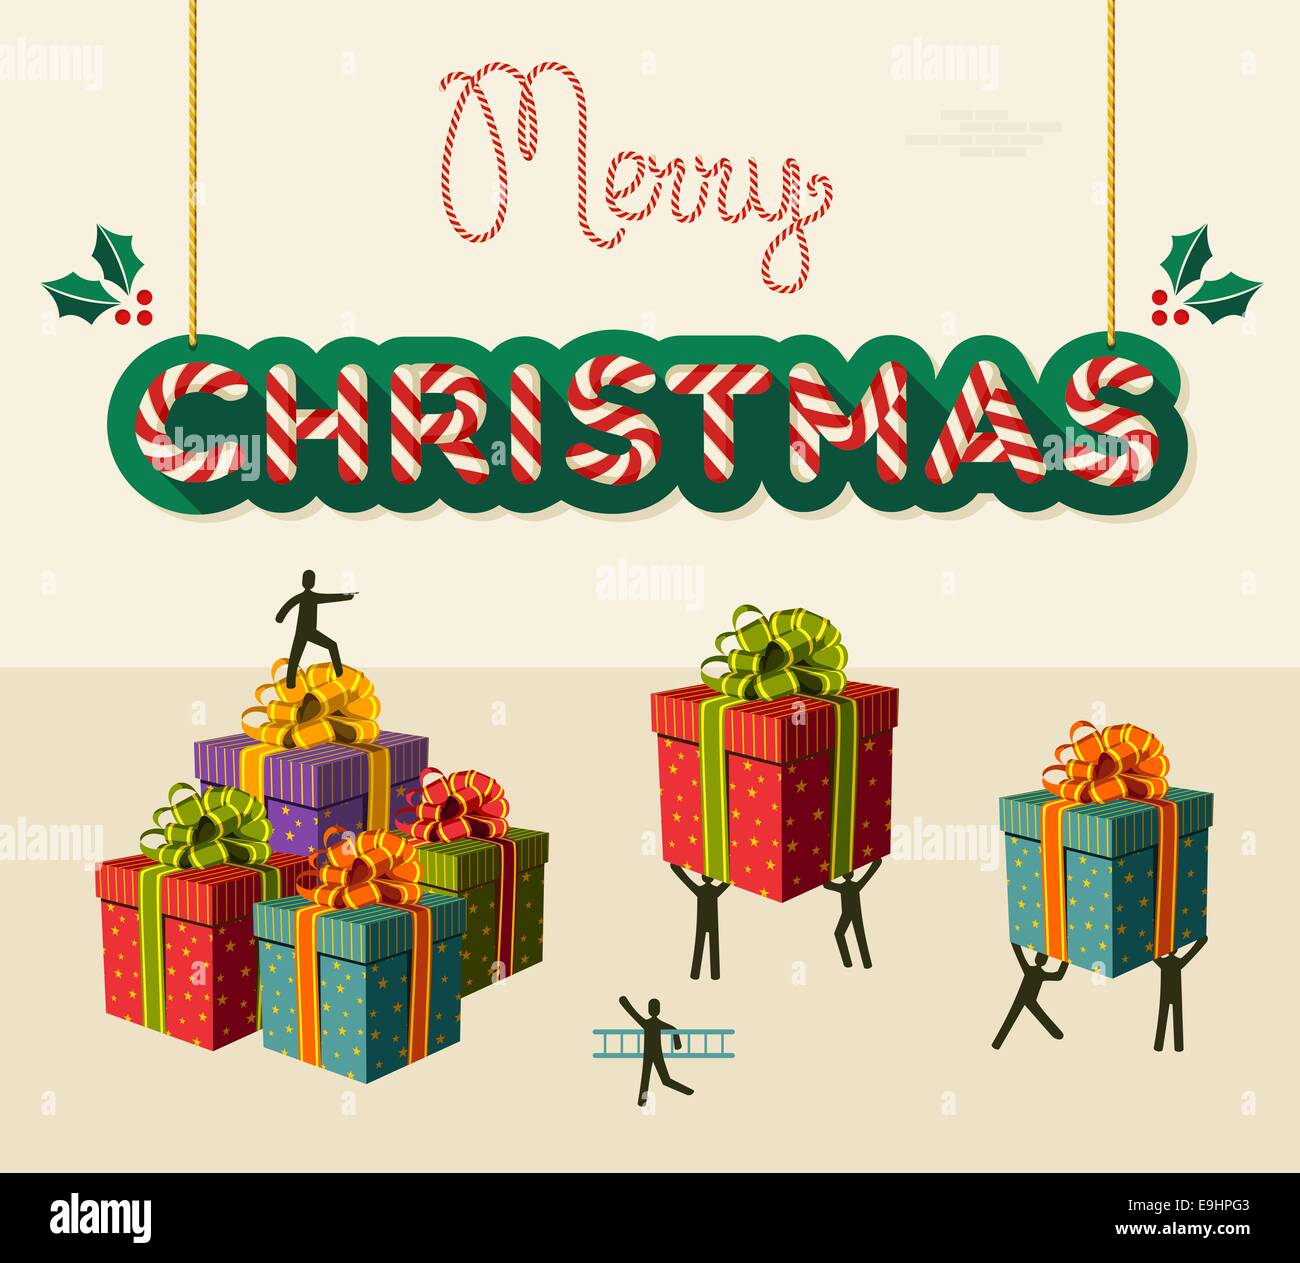 Equipo de Navidad preparar regalos para la Navidad de negocios tarjeta de felicitación. EPS10 ilustración vectorial organiza en capas para facilitar su edición Foto de stock